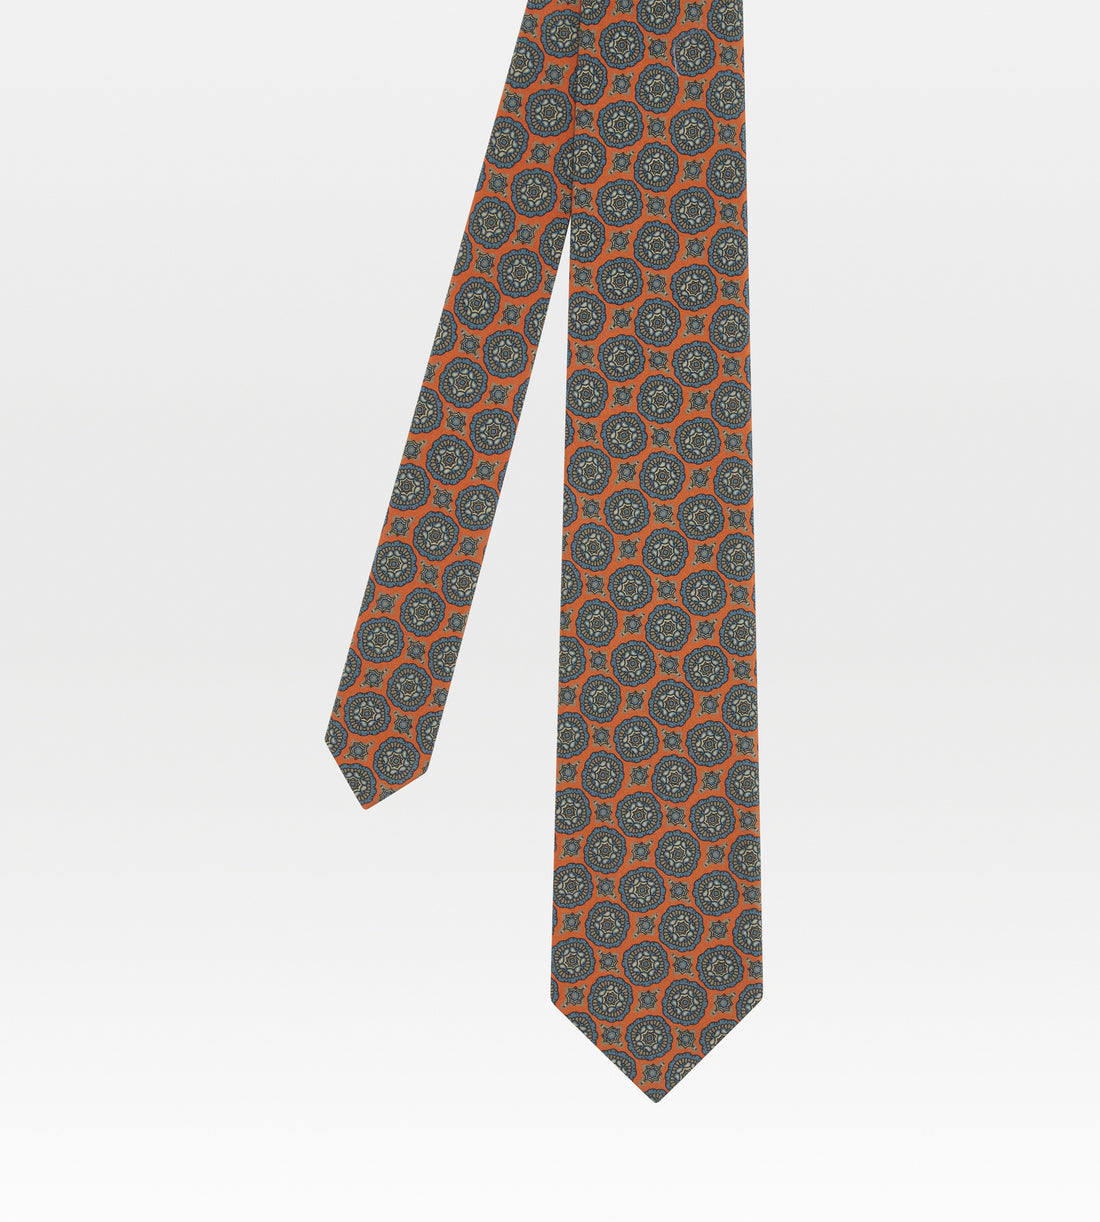 Cravate en soie orange à motifs